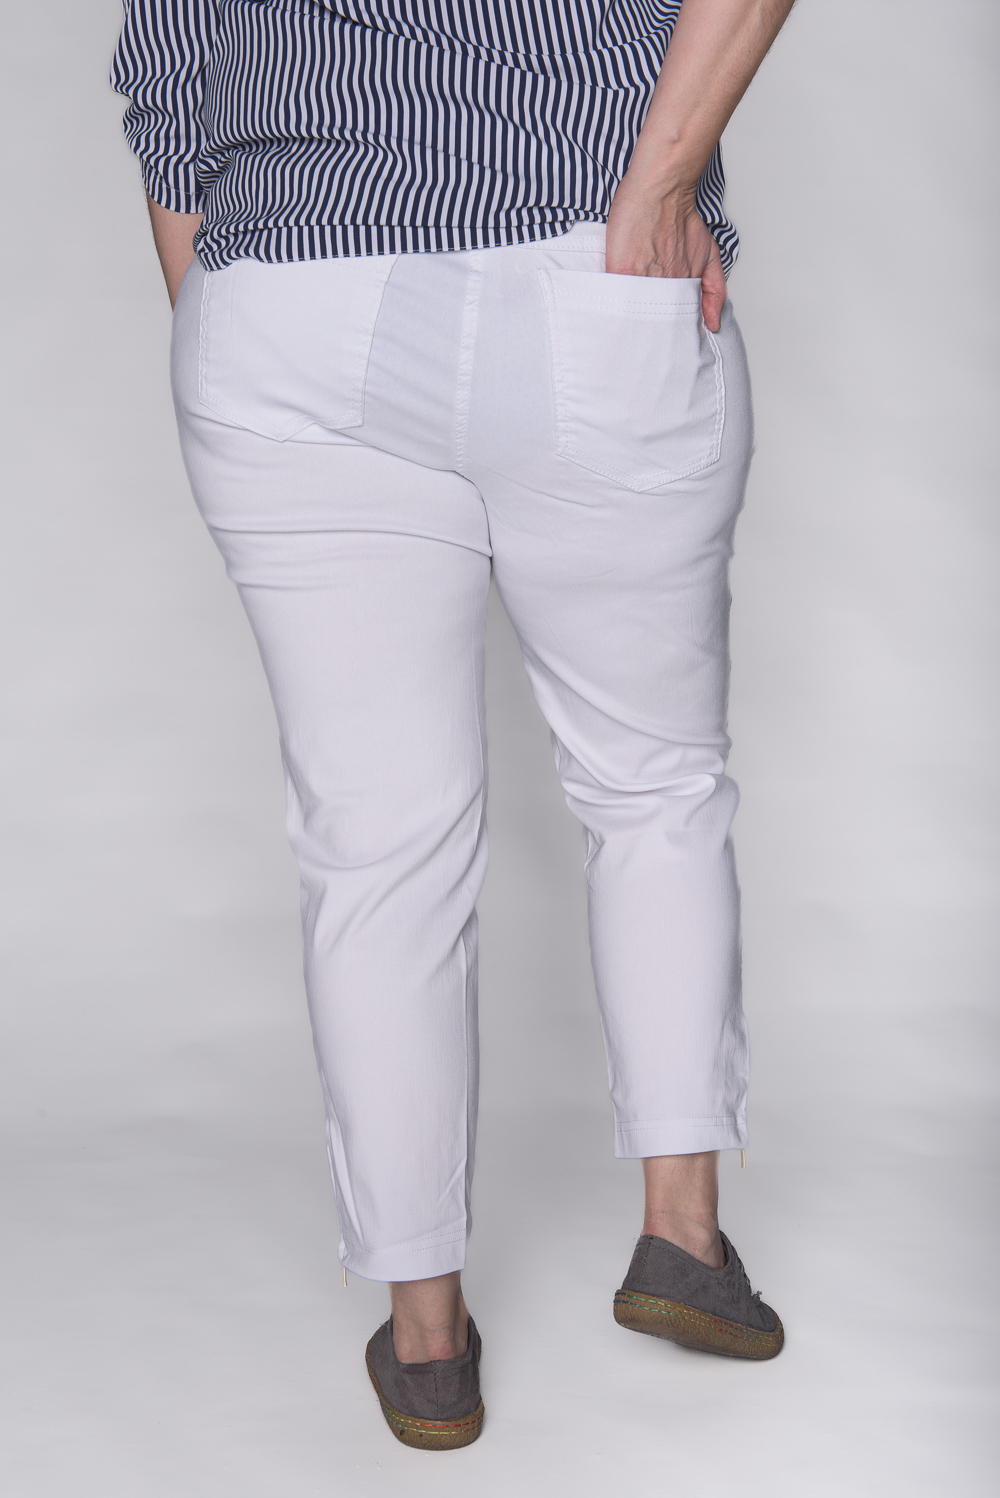 Spodnie z zameczkami CEVLAR kolor biały